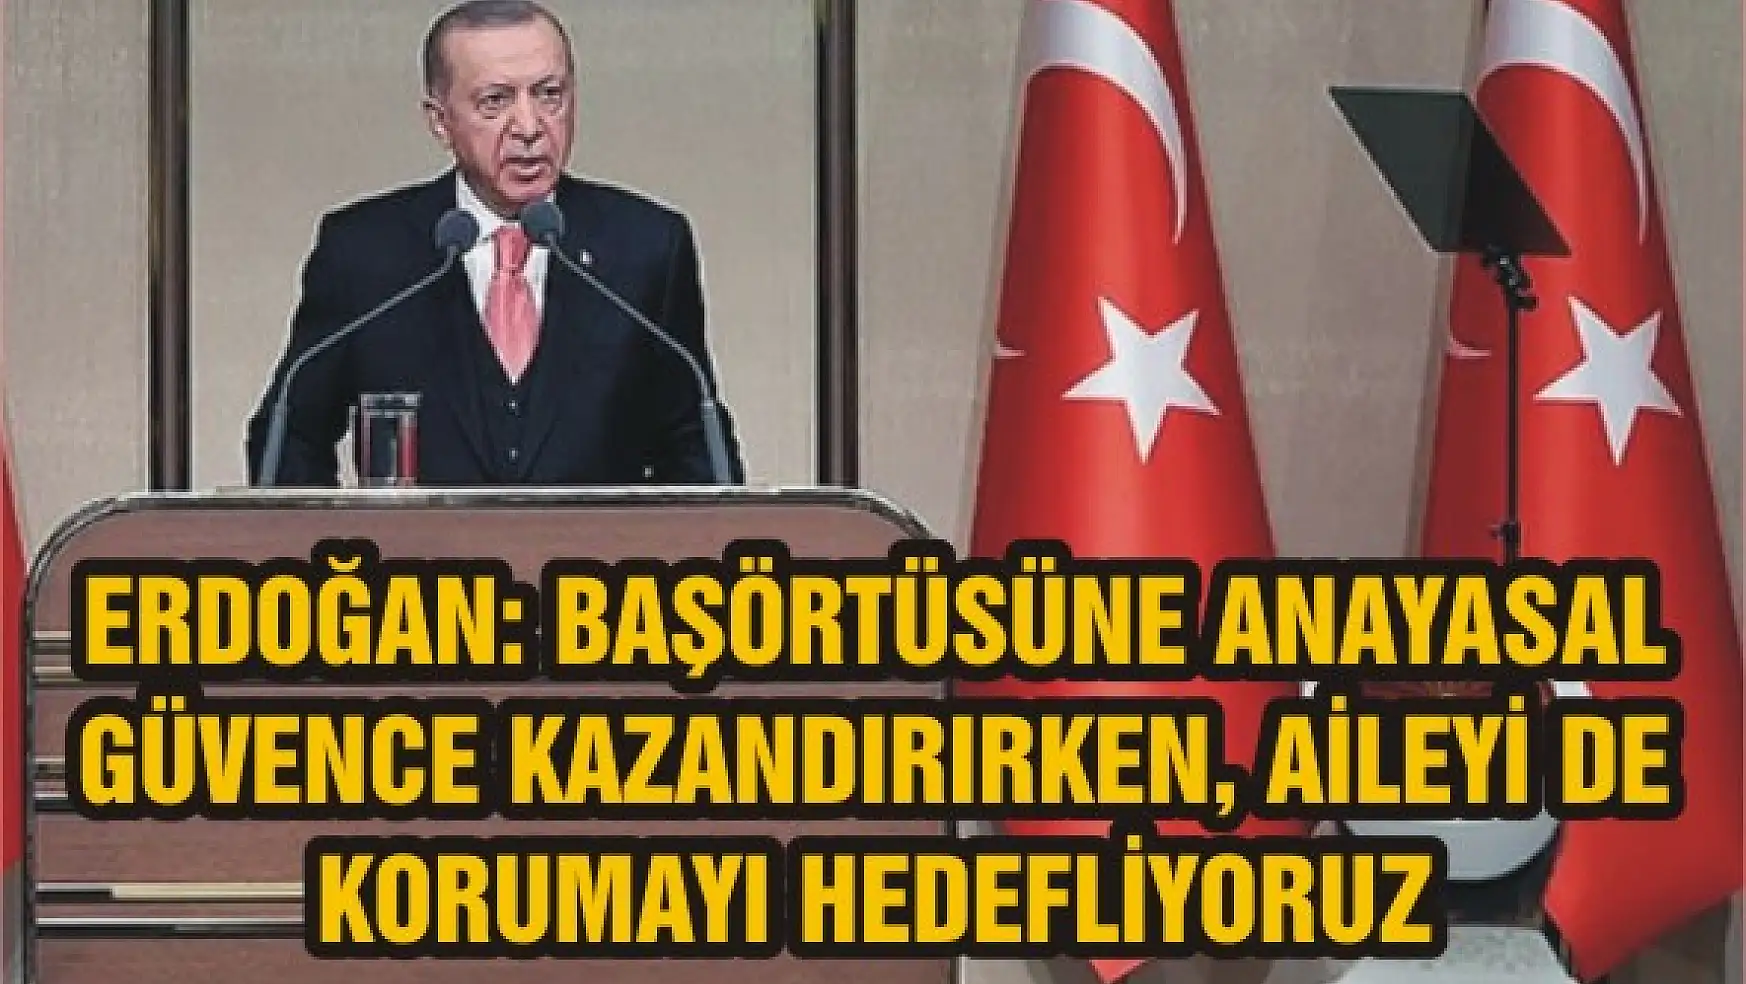 Erdoğan: Başörtüsüne anayasal güvence kazandırırken, aileyi de korumayı hedefliyoruz